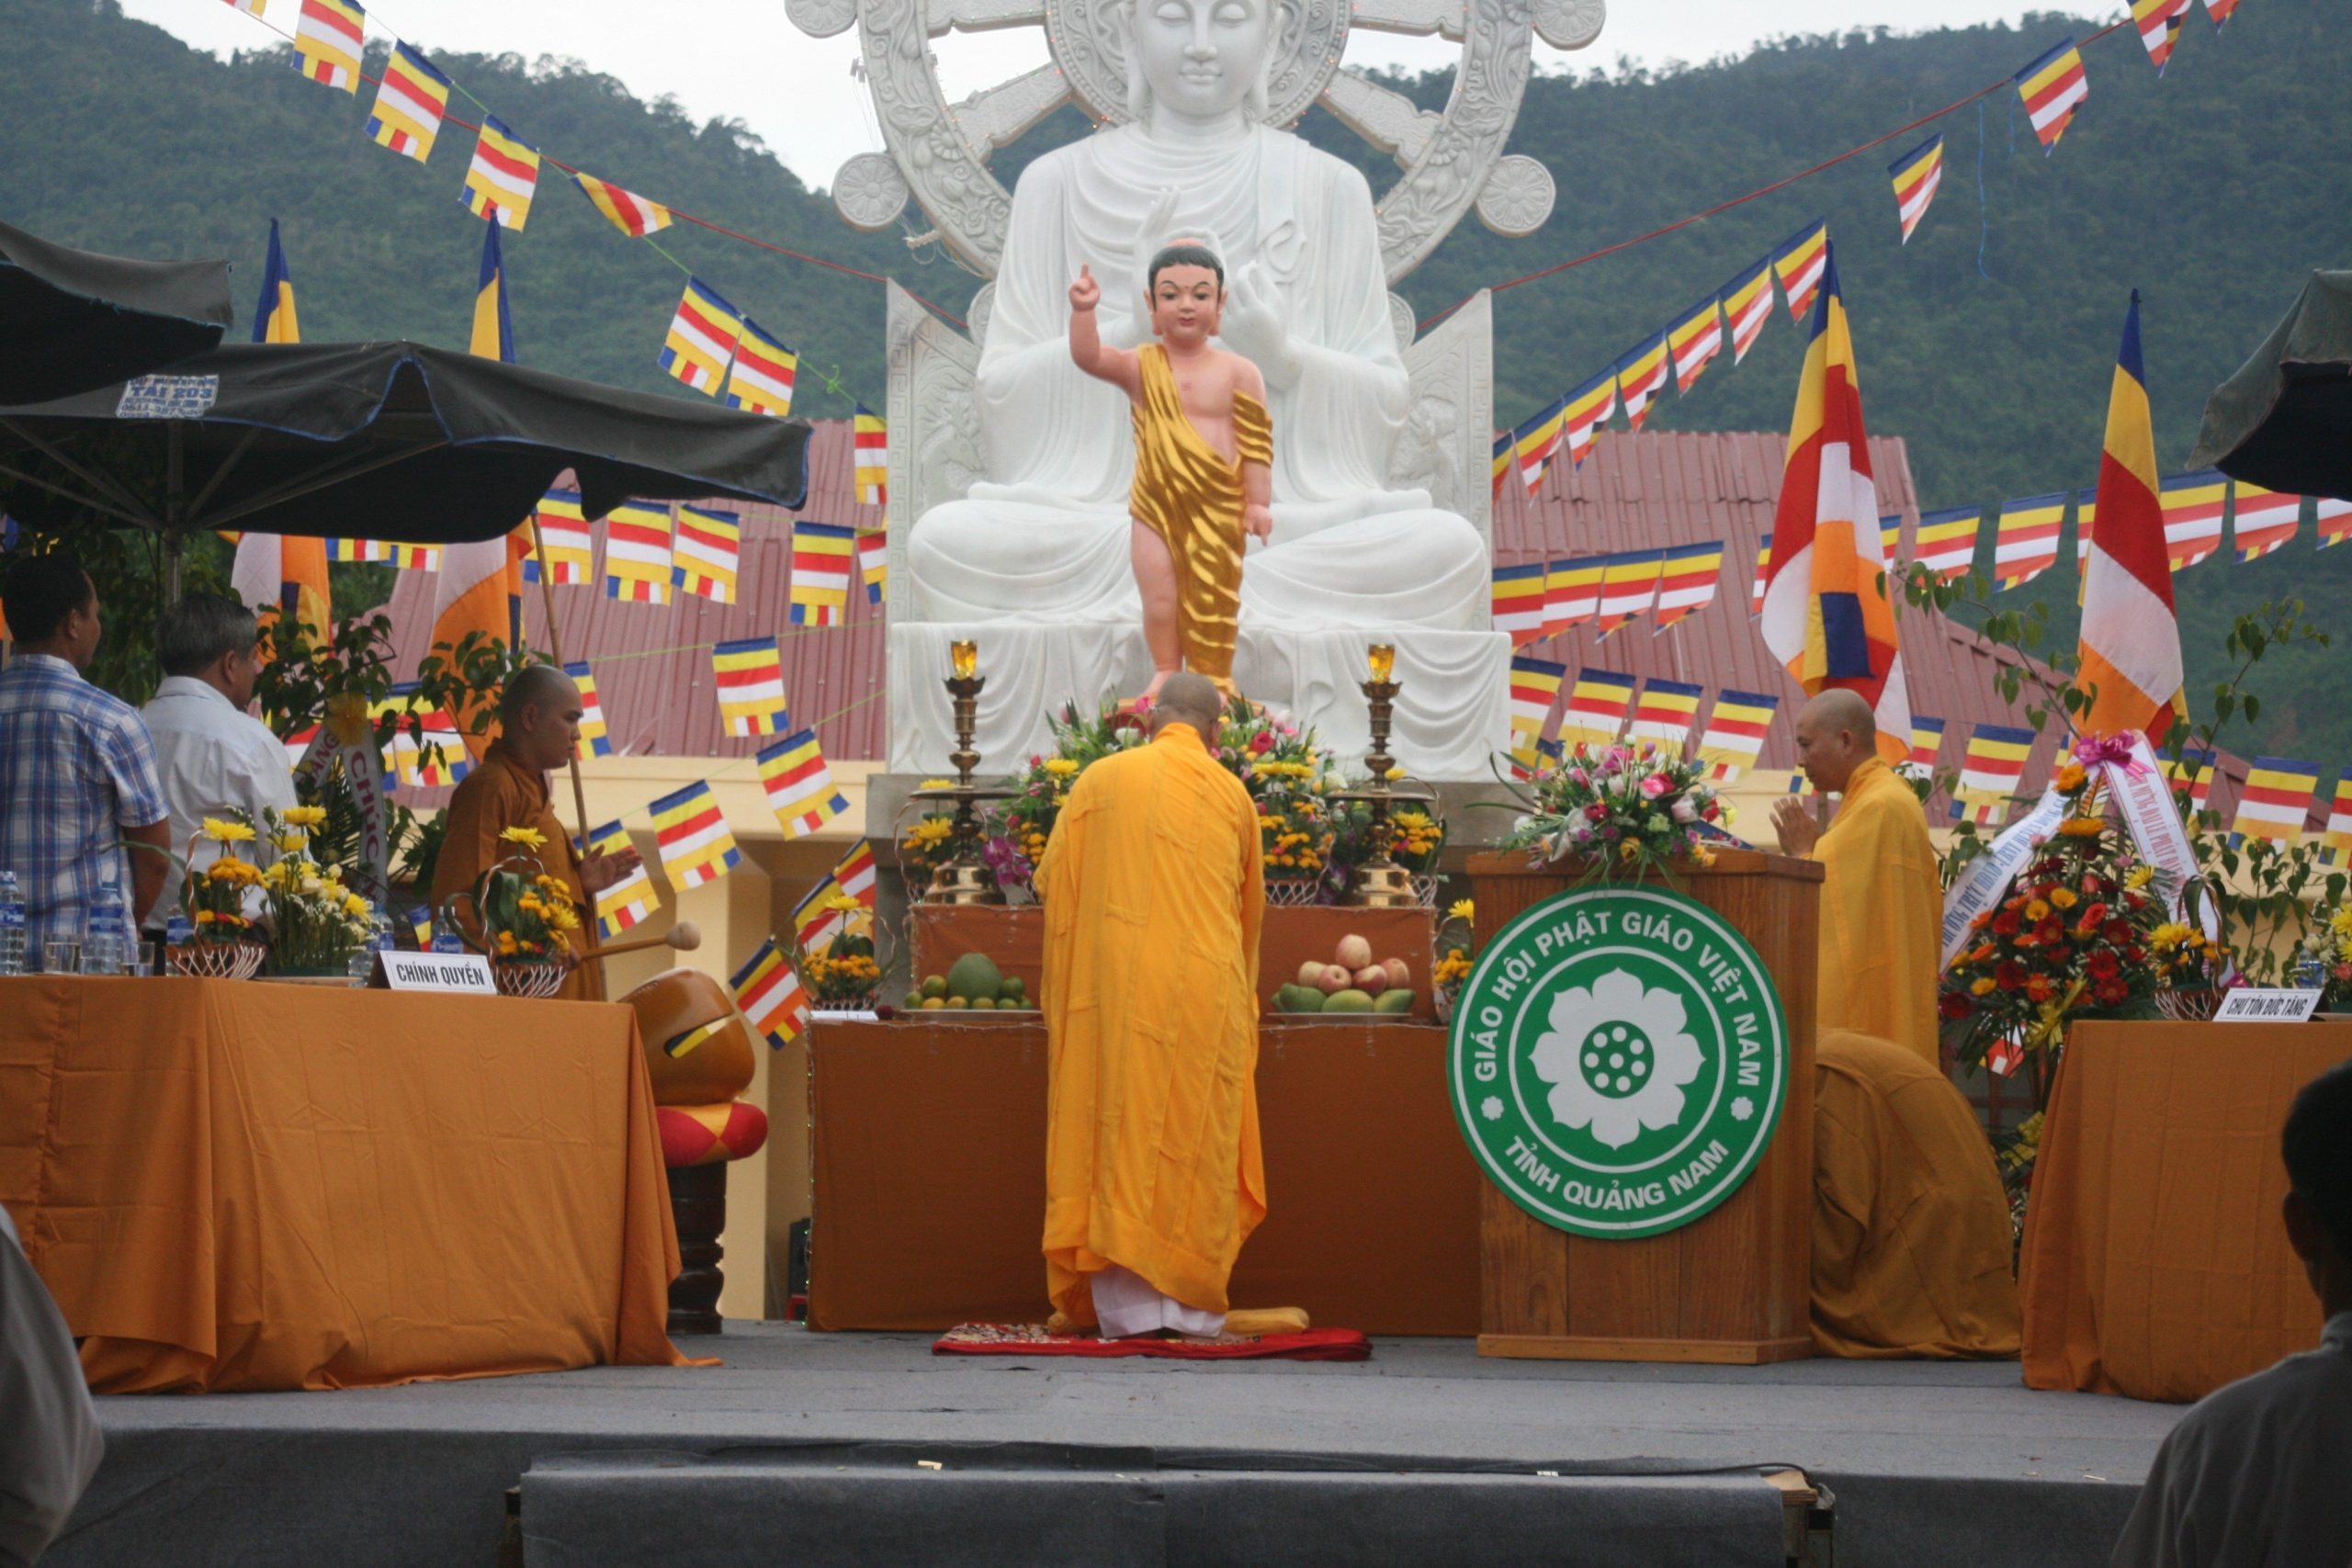 “Thầy Thích Hiện Thể: Một Tu Sĩ Tận Tâm Truyền Bá Phật Pháp và Xây Dựng Xã Hội Tốt Đẹp”